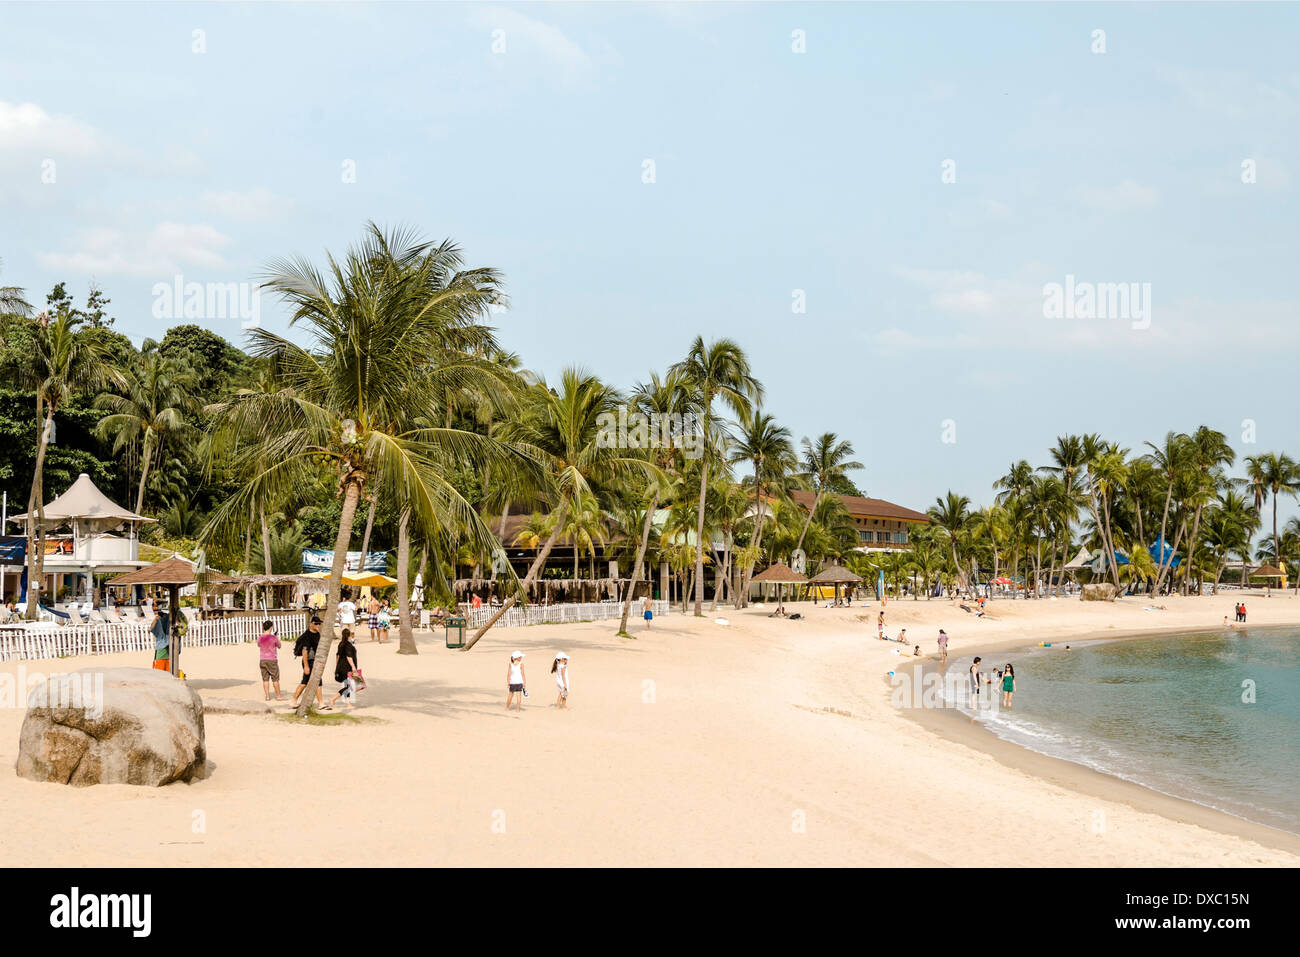 La plage de Siloso pittoresque sur l'île de Sentosa, Singapour Banque D'Images